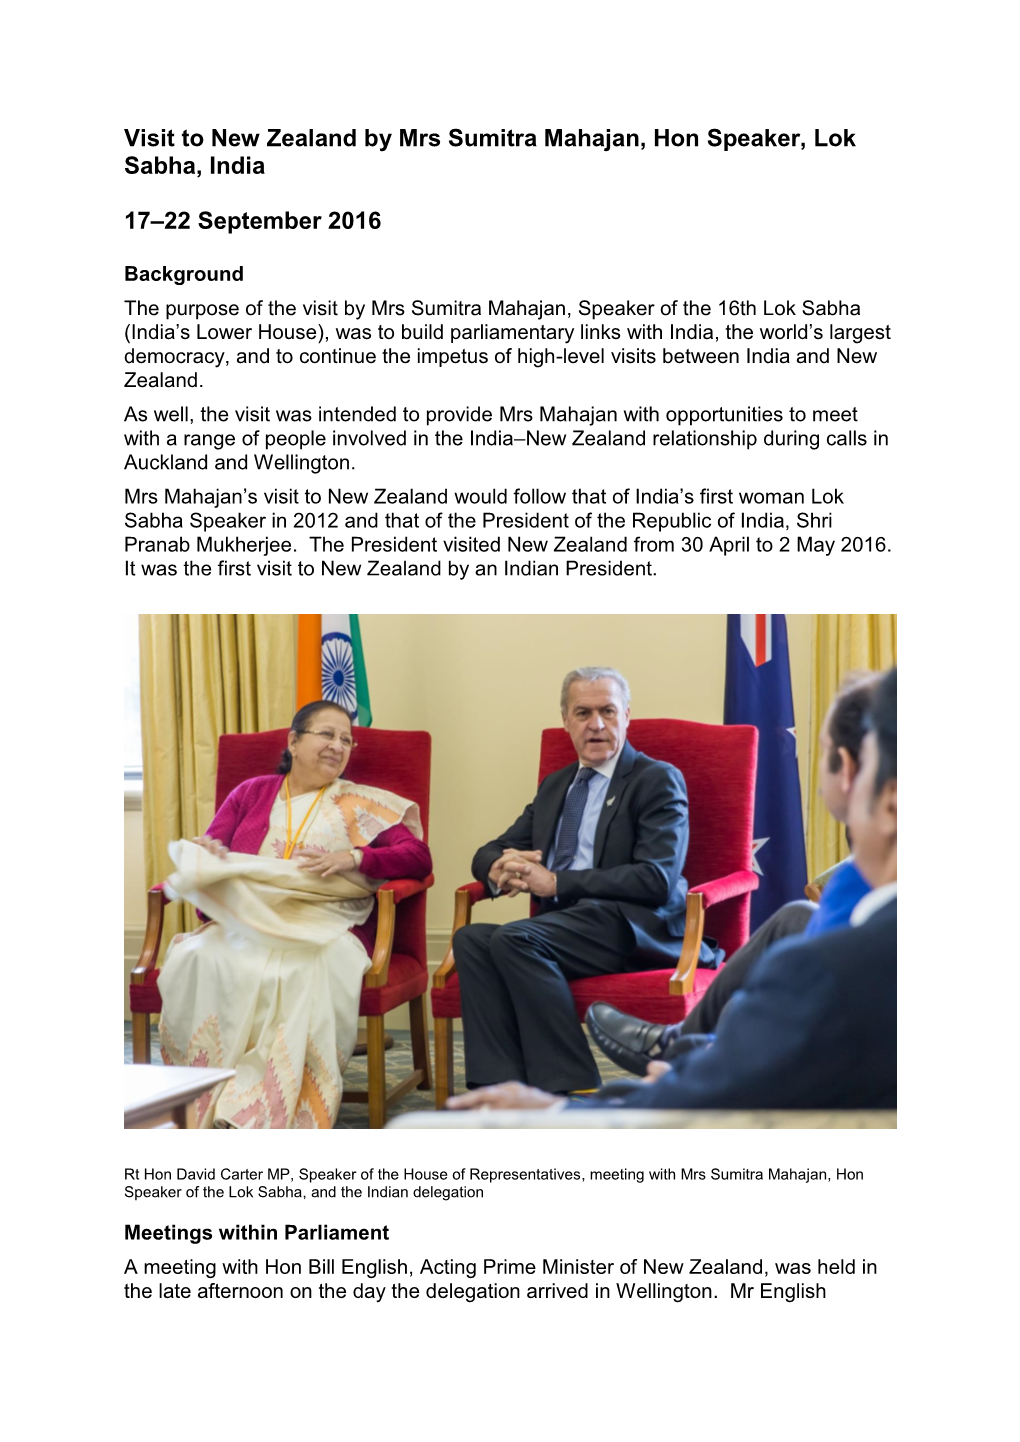 Visit to New Zealand by Mrs Sumitra Mahajan, Hon Speaker, Lok Sabha, India